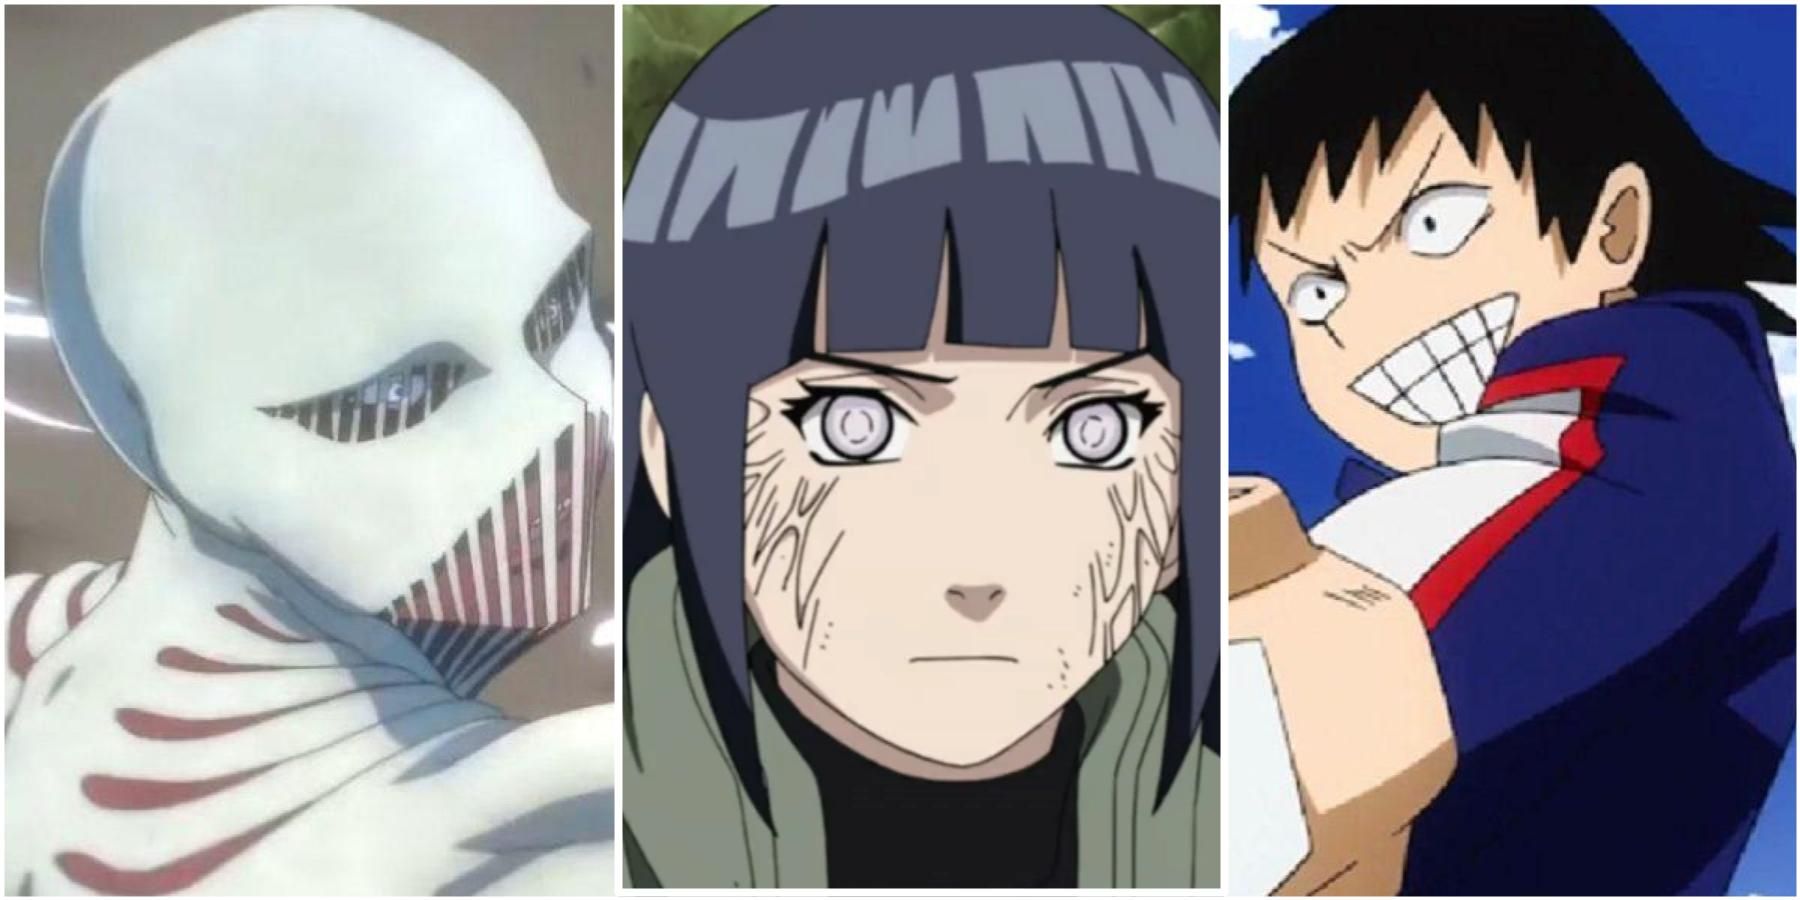 War Hammer Titan (Attack On Titan), Hinata Hyuga (Naruto Shippuden), Hanta Sero (My Hero Academia)